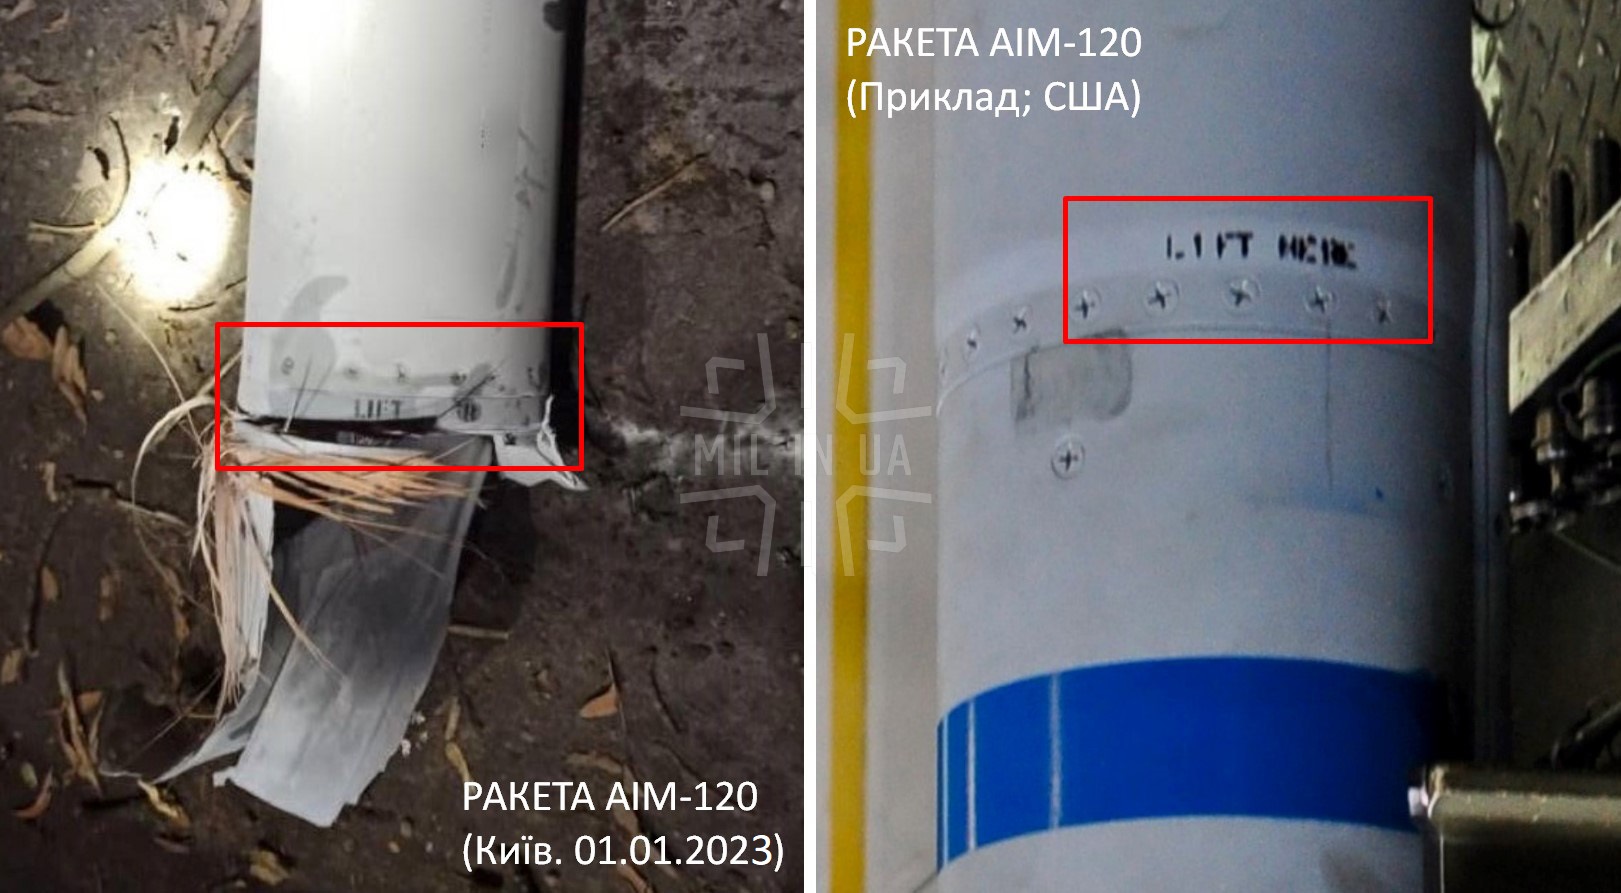 Egy AIM-120-as rakéta töredéke Kijevben és egy AIM-120-as rakéta része az USA-ban